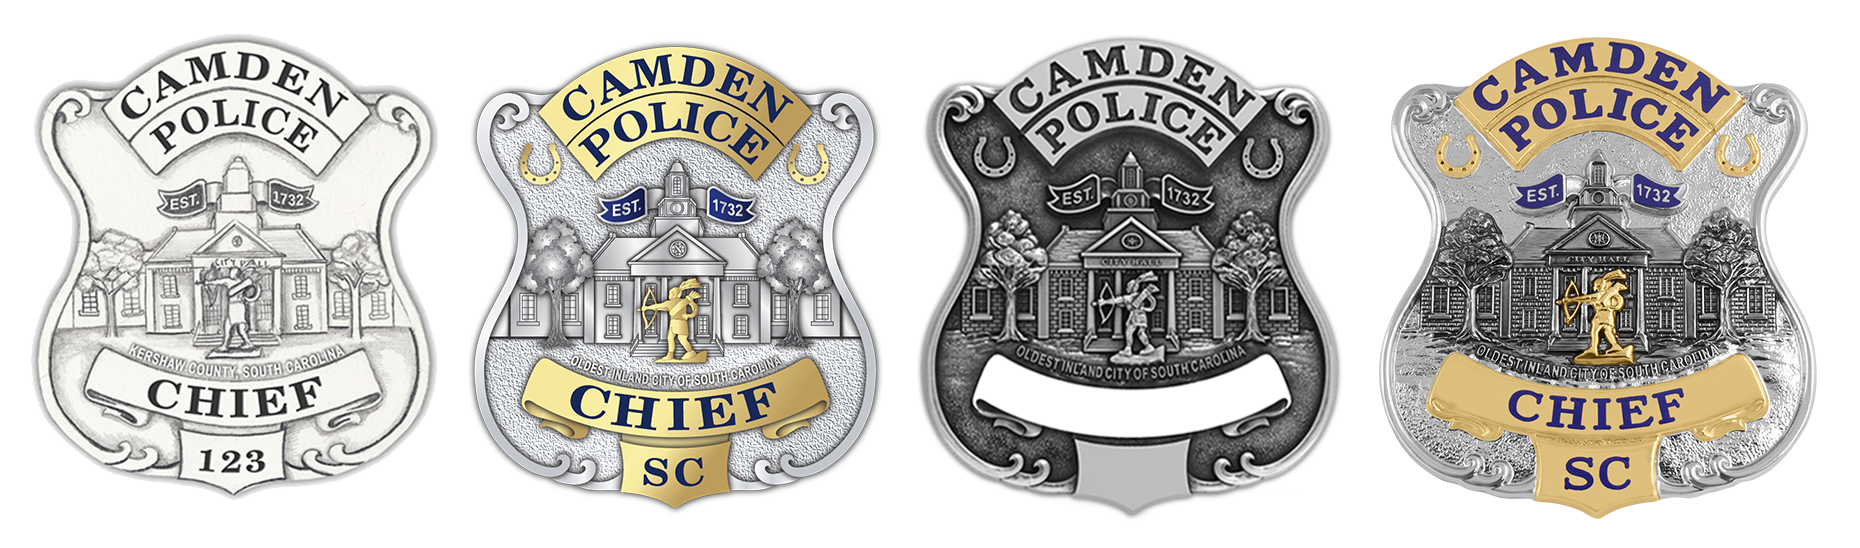 Camden Police Badge Design Process